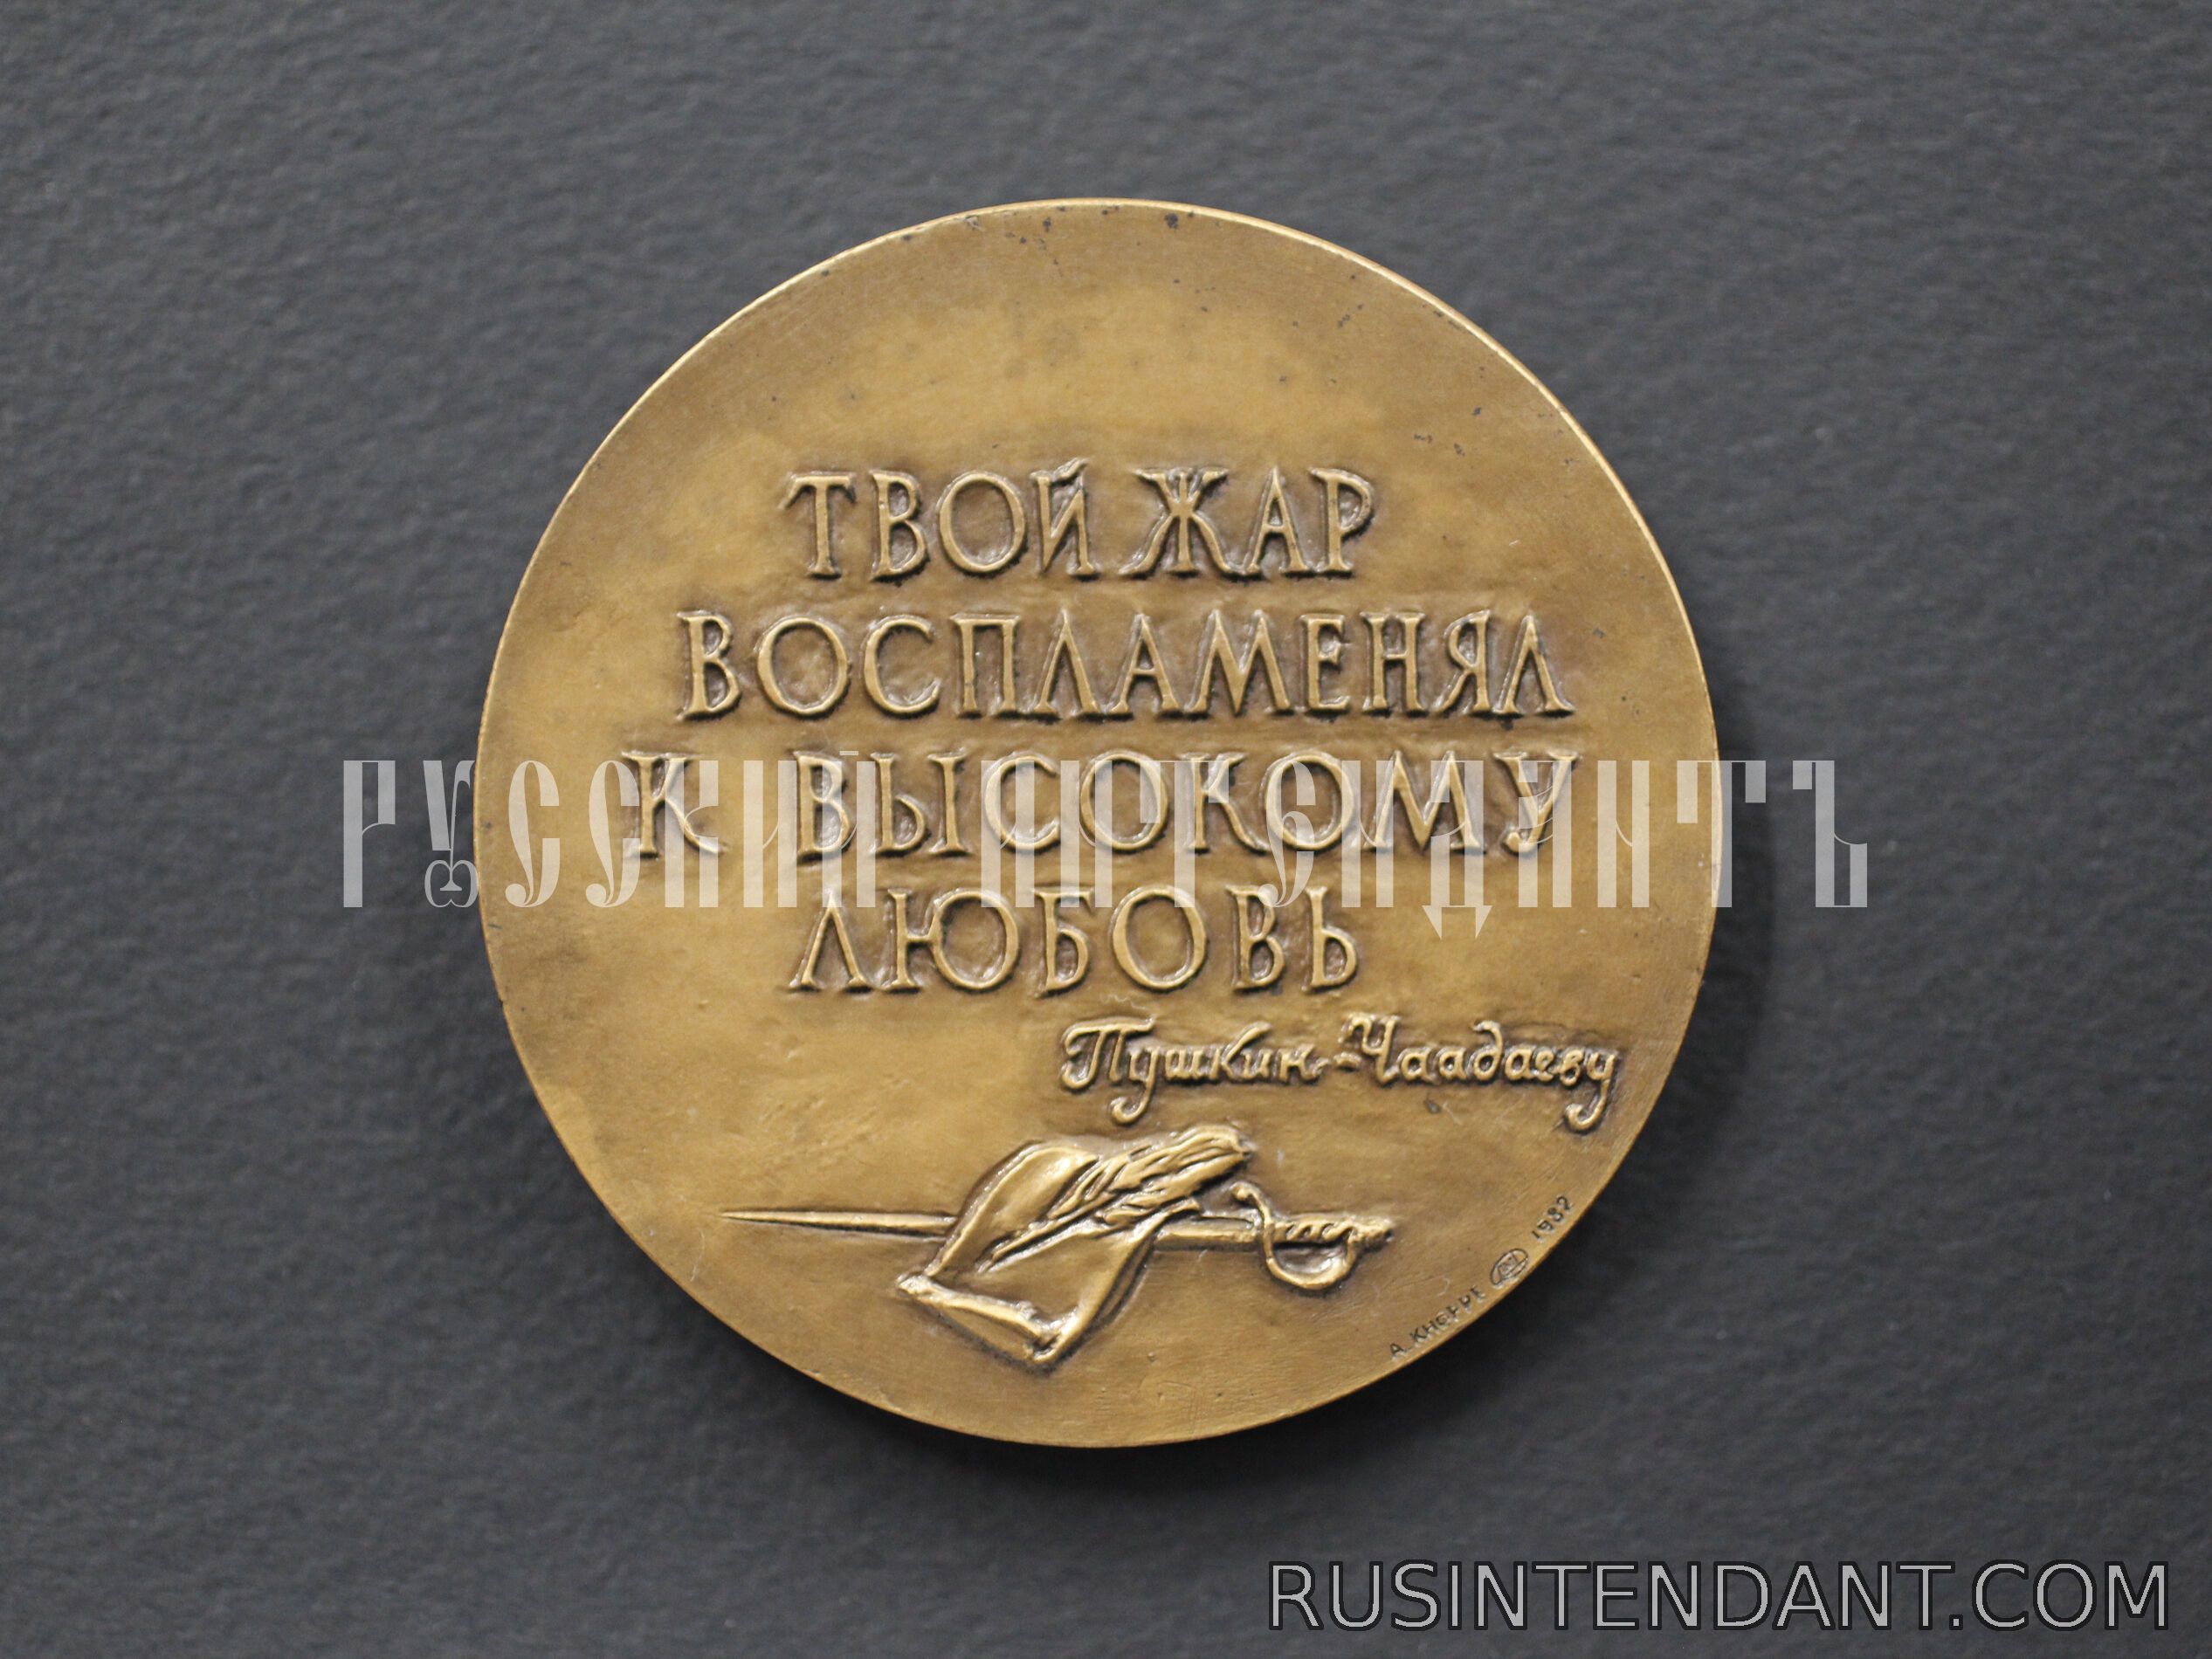 Фото 2: Настольная медаль «Чаадаев 1794-1856» 